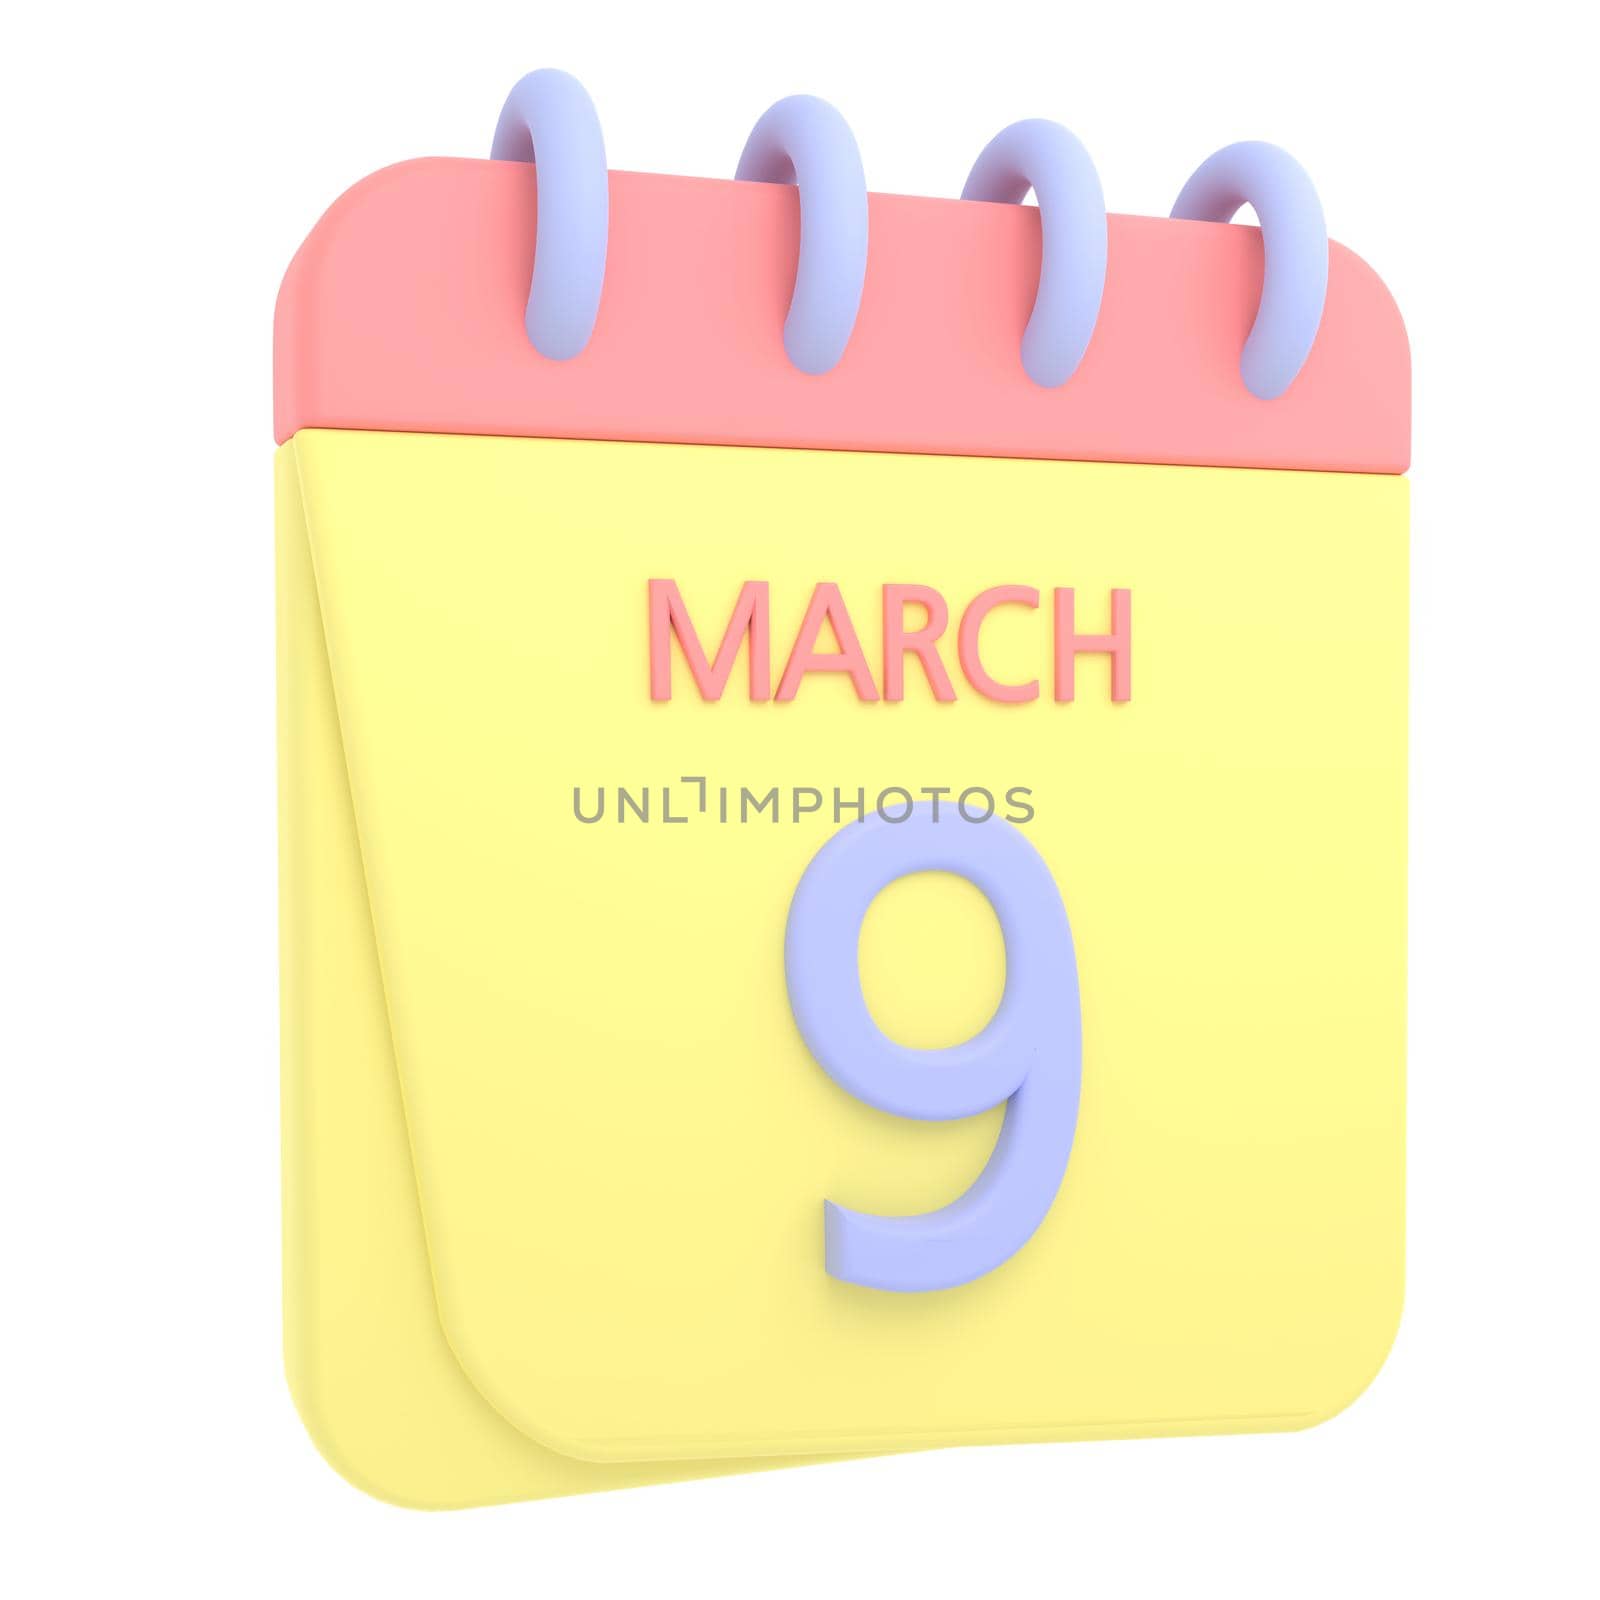 9th March 3D calendar icon by AnnaMarin